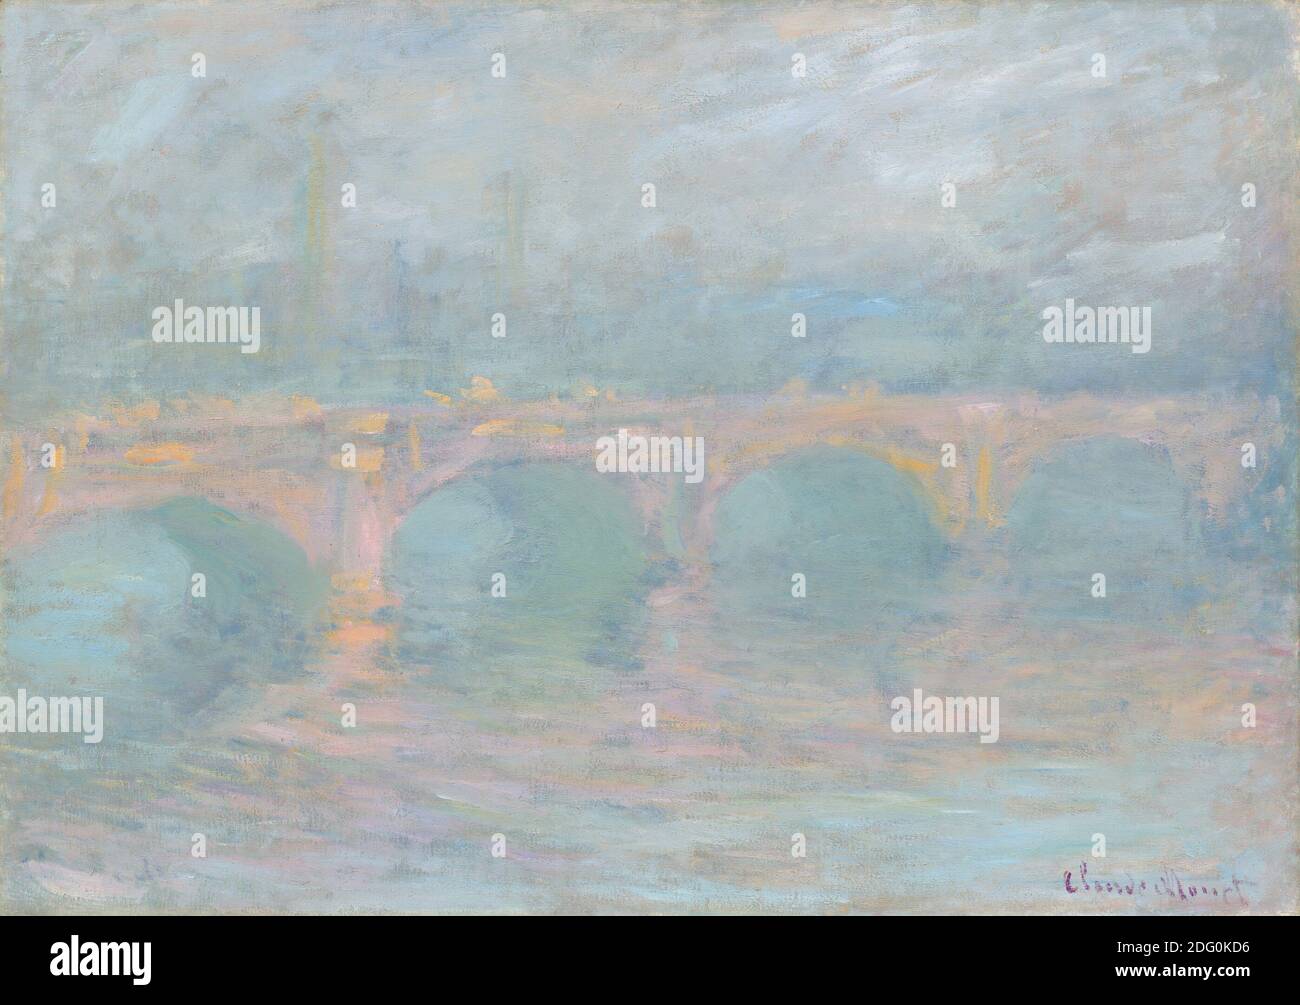 Titre: Waterloo Bridge, Londres, au coucher du soleil Créateur: Claude Monet Date: 1904 Moyen: Huile sur toile dimension: 65.5 x 92.7 cm lieu: National Gallery of Art, Washington Banque D'Images